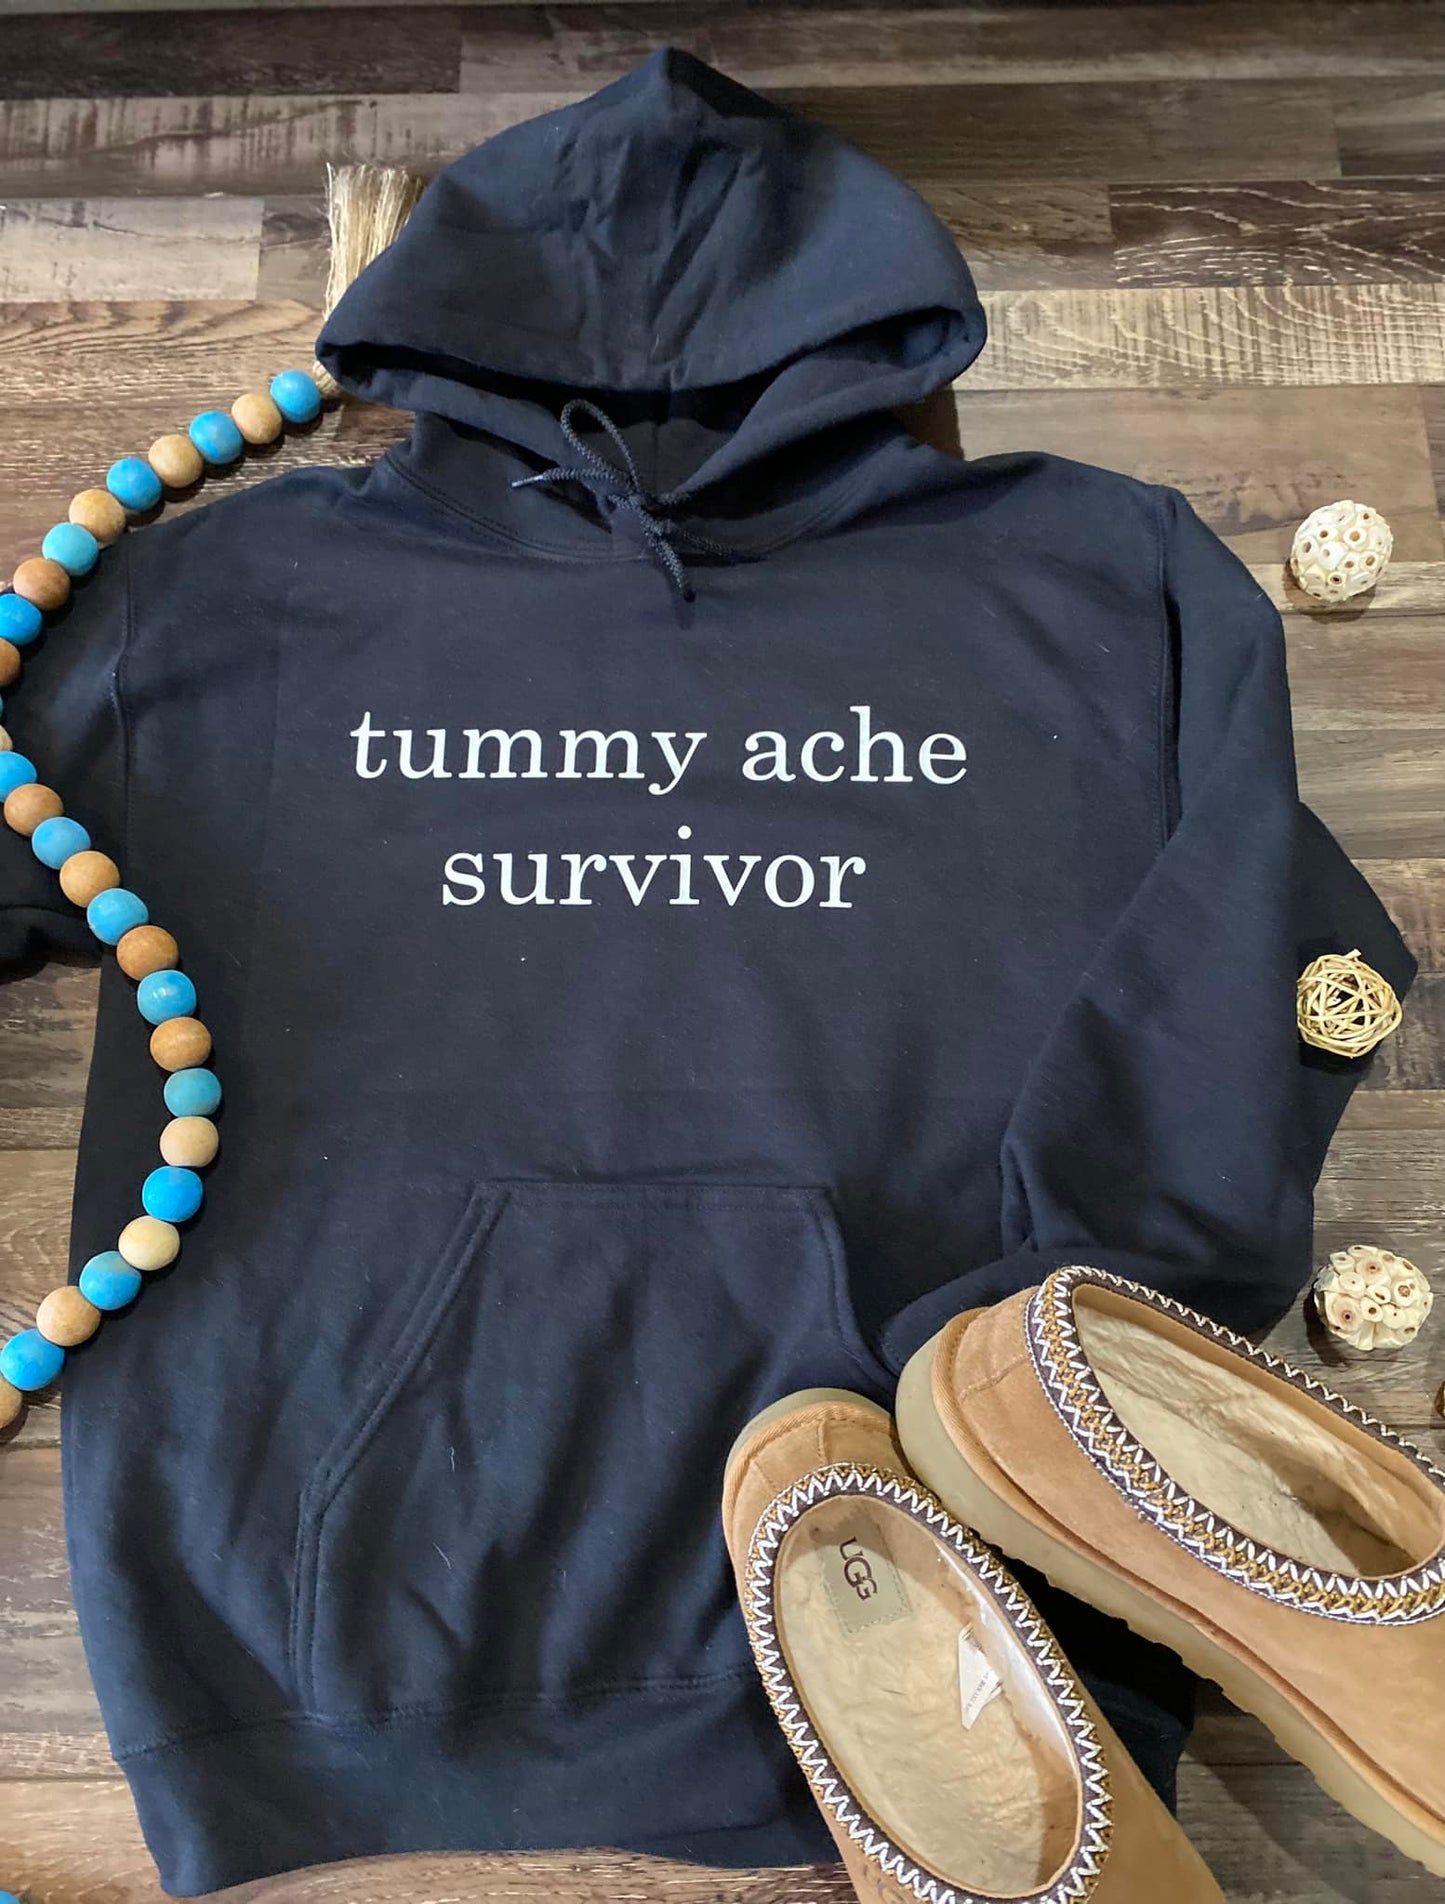 Tummy ache survivor hoodie